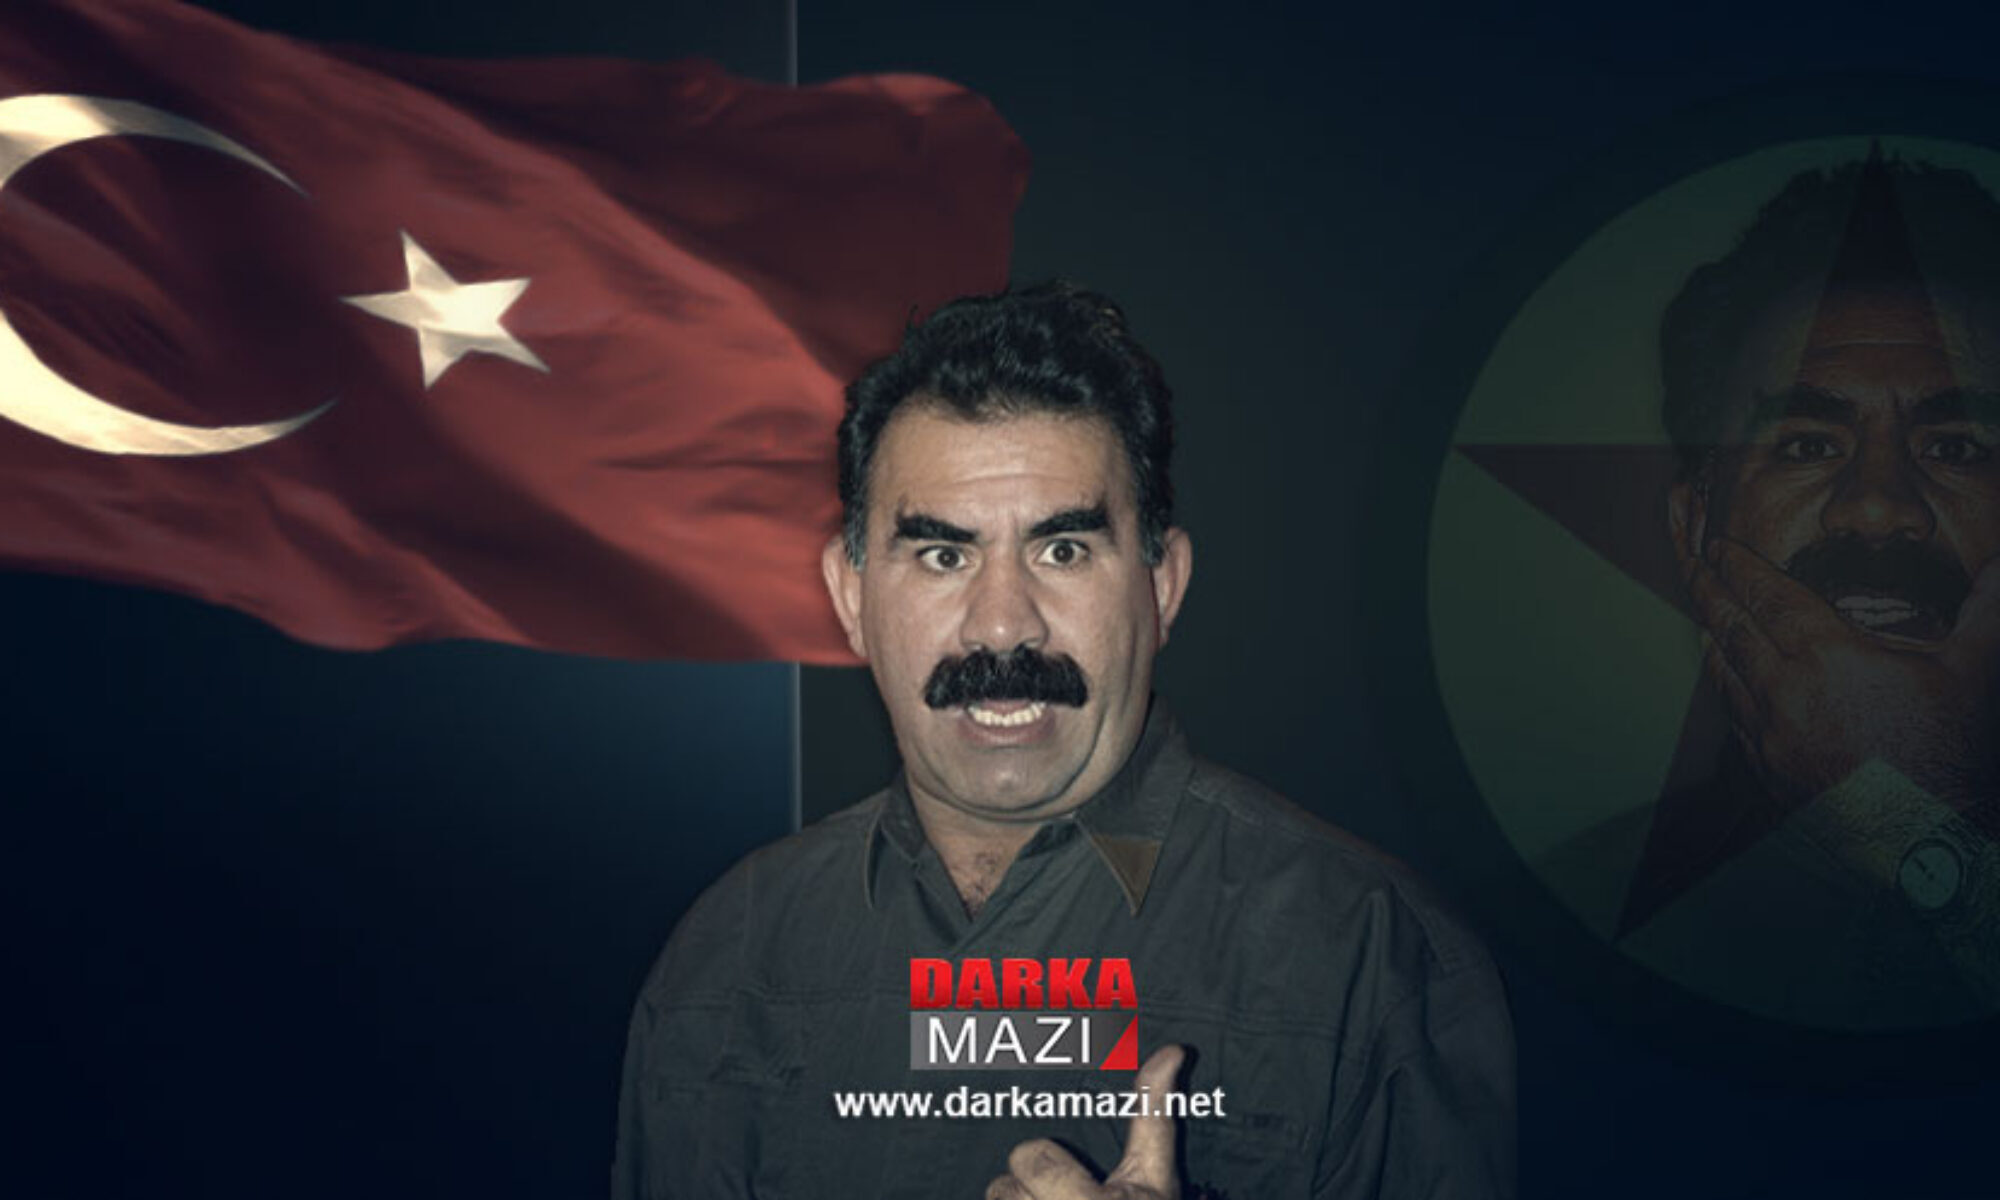 Abdullah Öcalan öldü haberlerinin gerçeği ne?İmralı, Bursa Başsavcılığı, Asrın Hukuk Bürosu, Kerkük, Türkiye, PKK